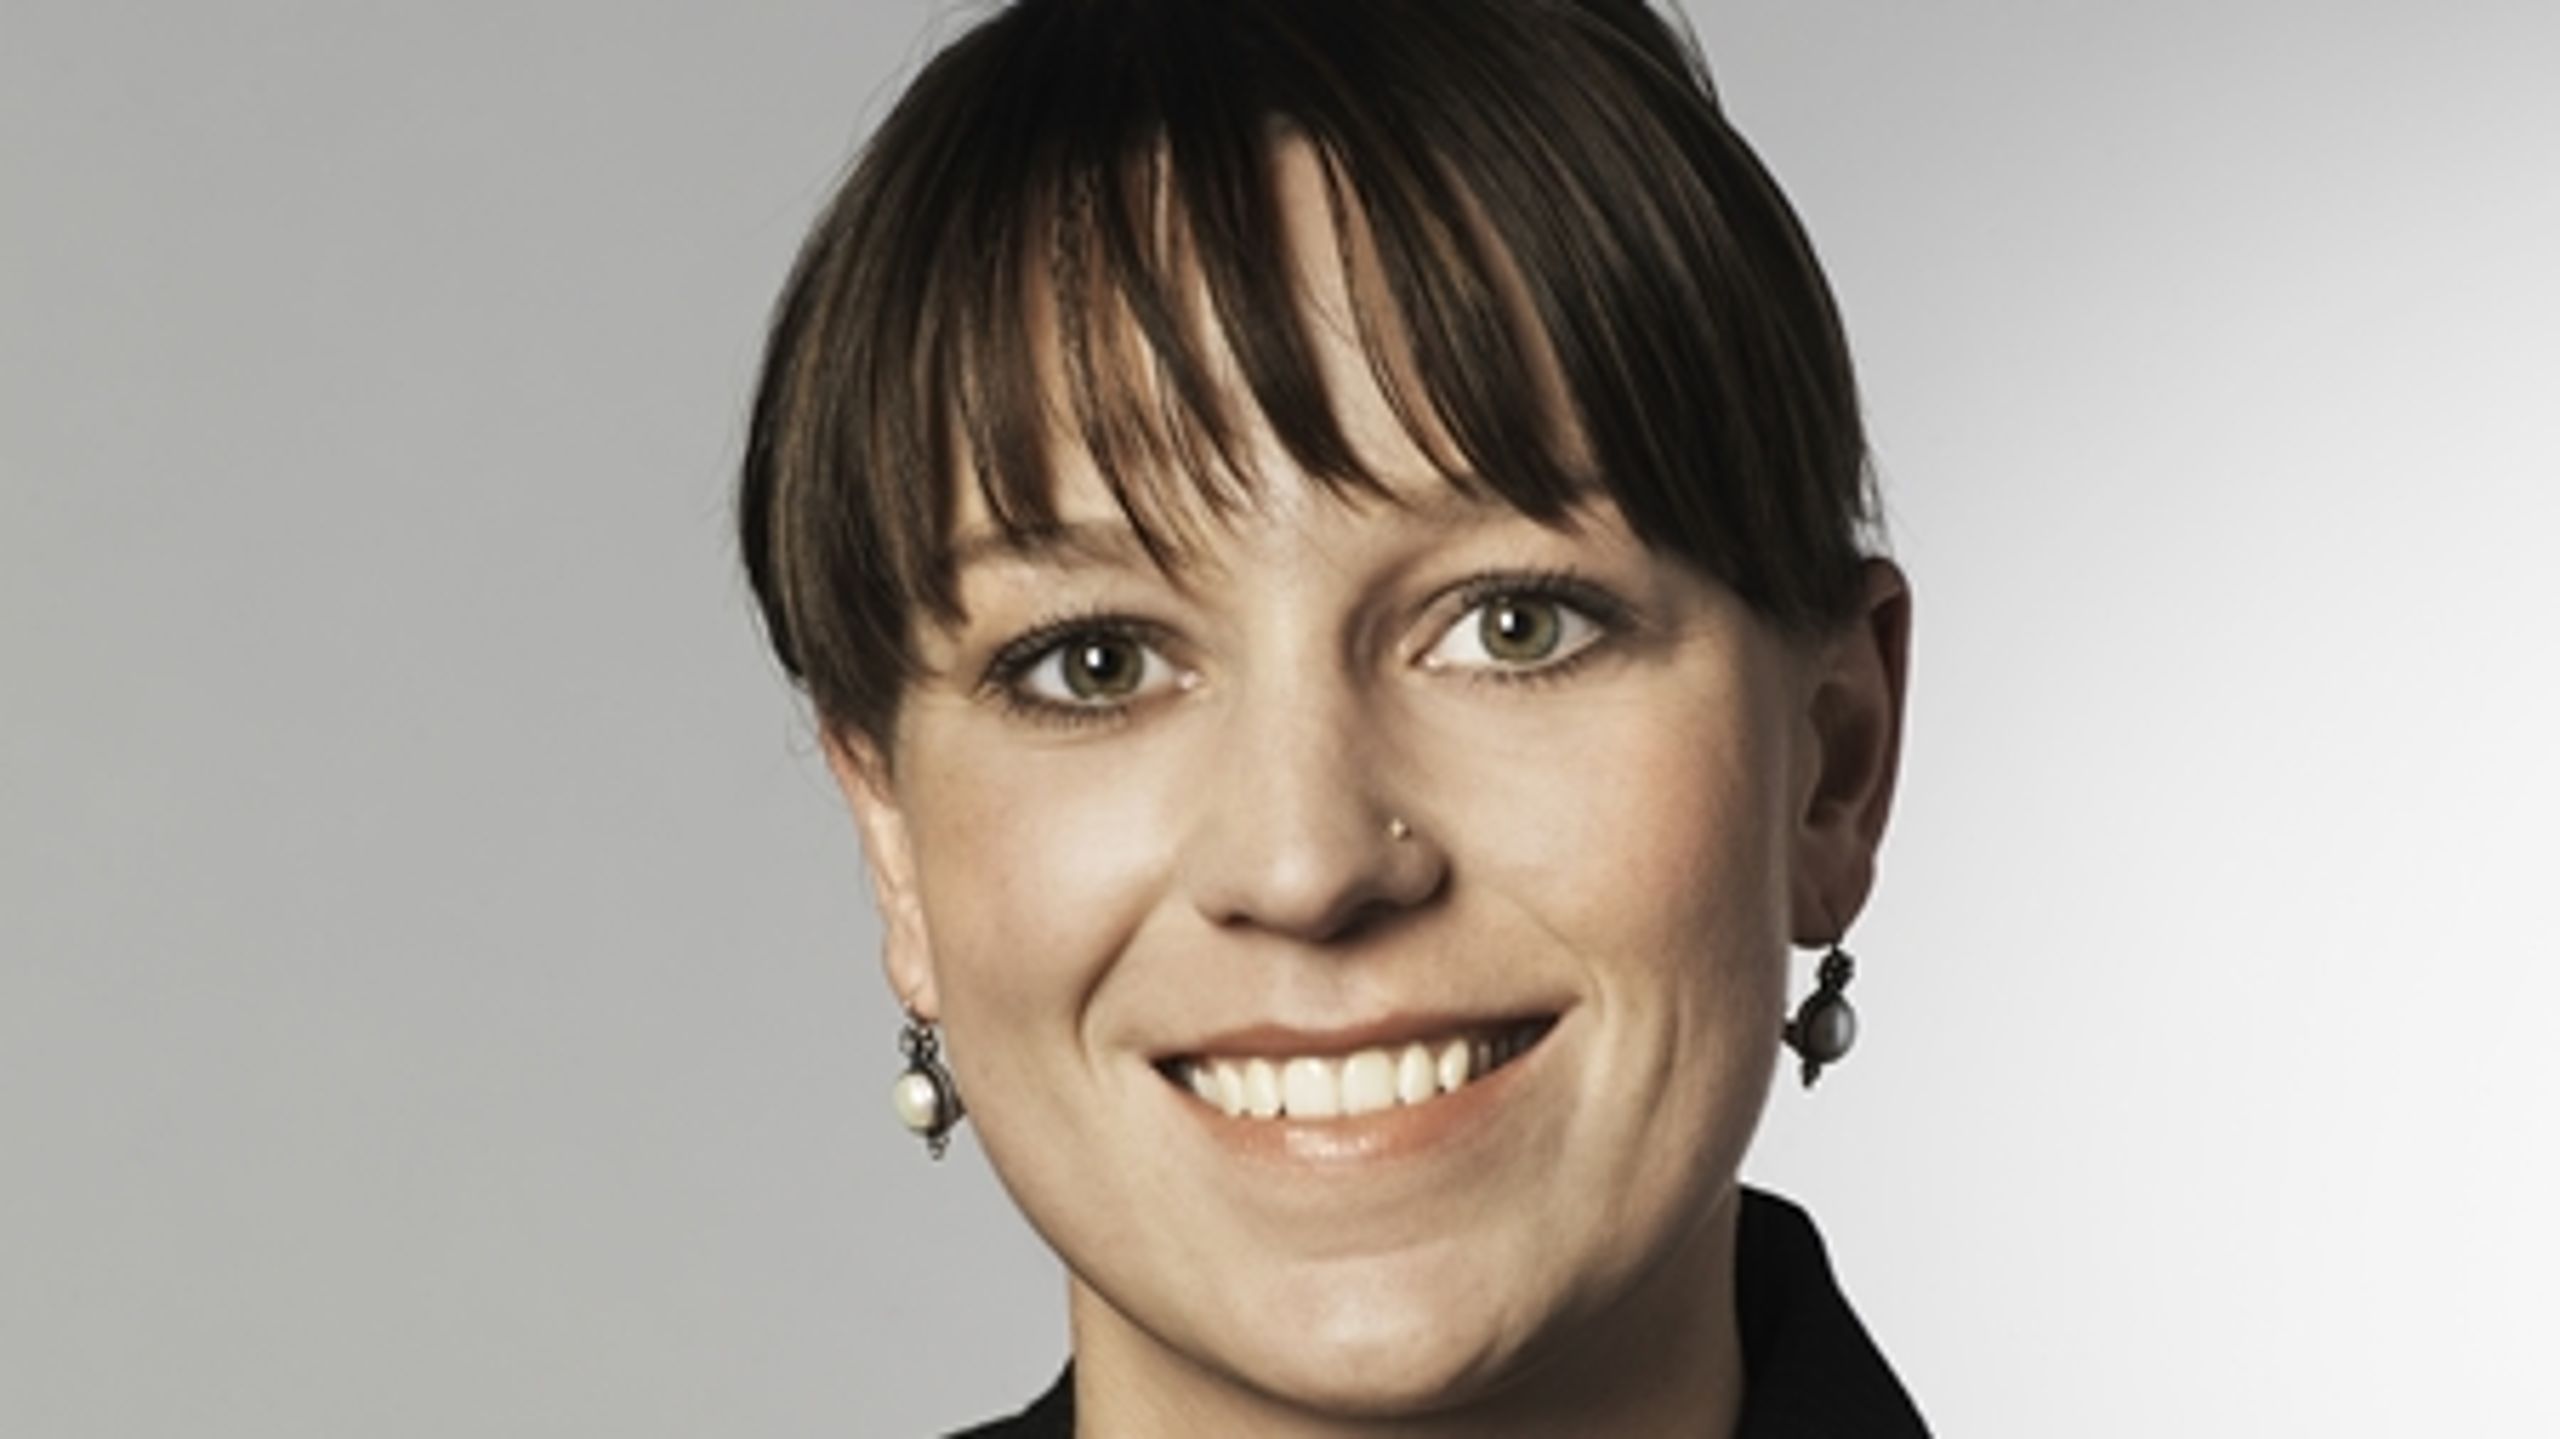 Miljøminister Kirsten Brosbøl (S) har ikke tænkt sig at ændre regeringens affaldspolitik som følge af vismændenes kritik.